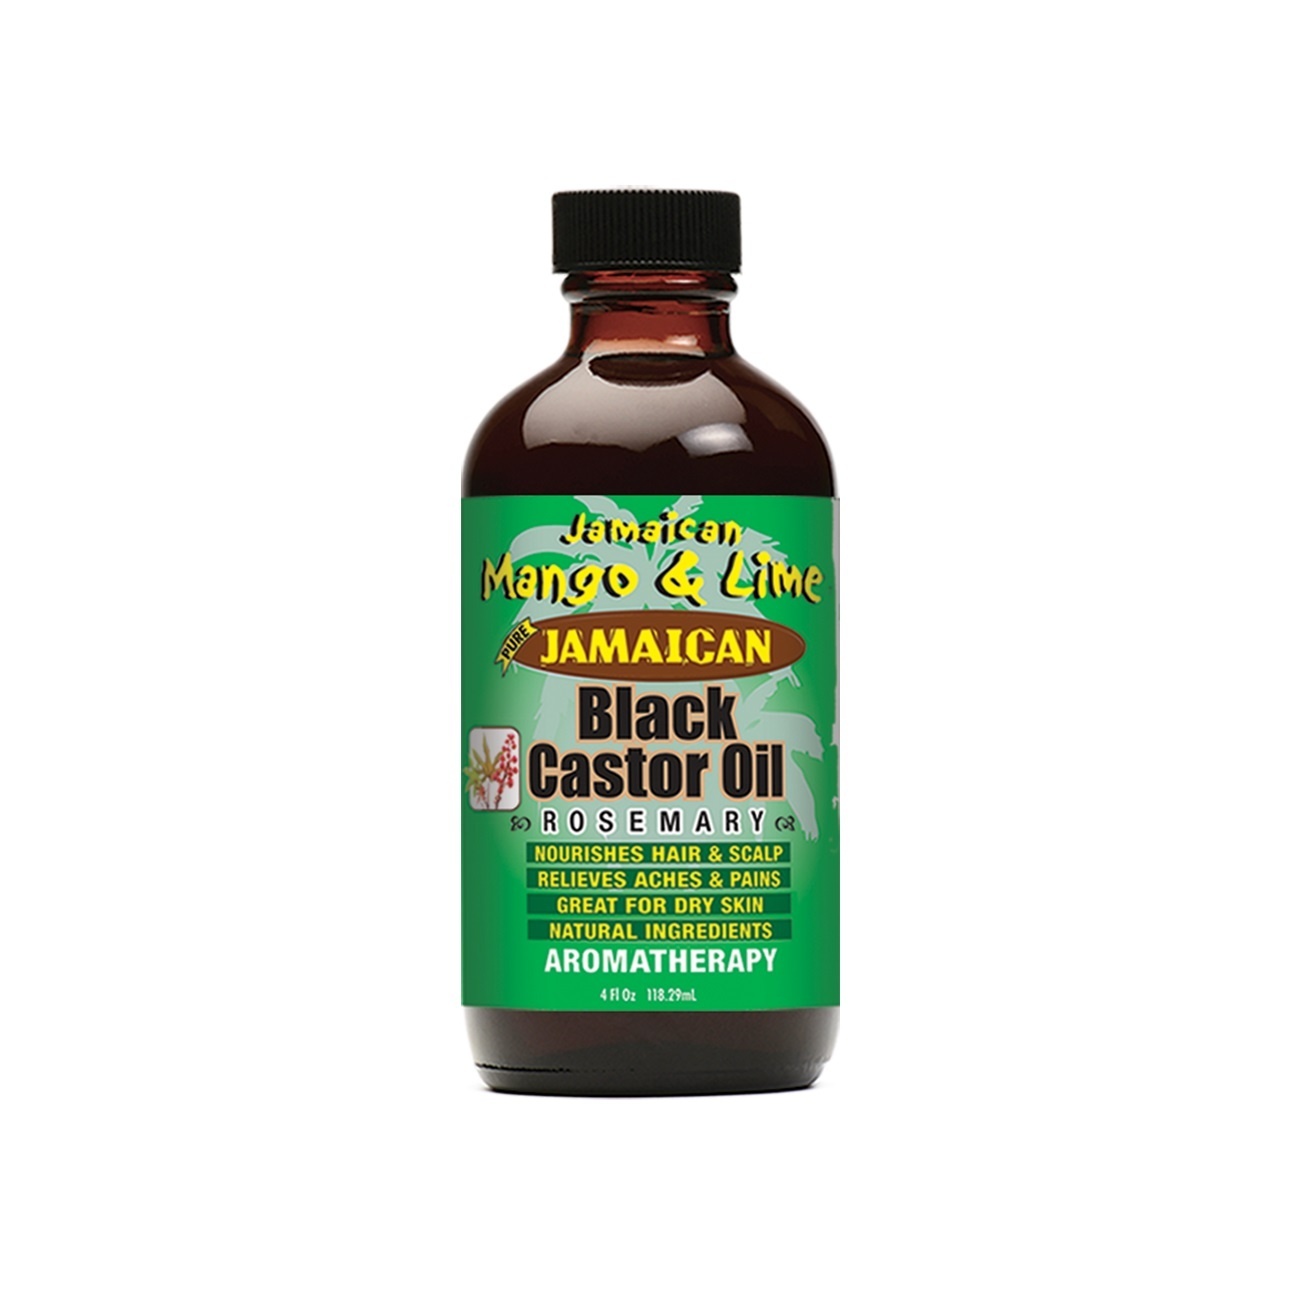 slide 1 of 1, Jamaican Mango & Lime Black Castor Oil, Rosemary, 4 fl oz